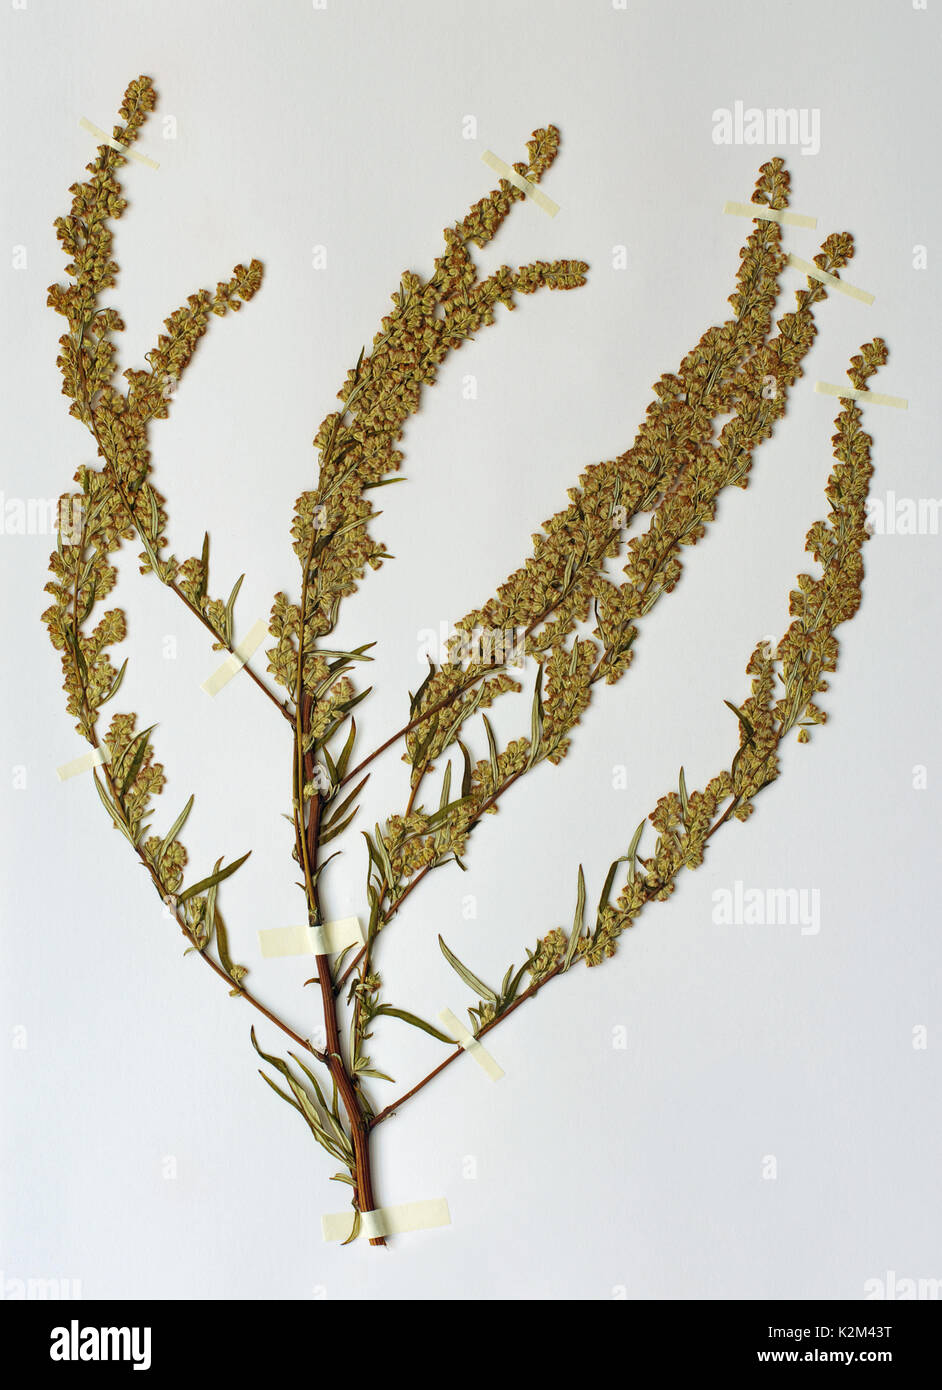 Ein herbarium Blatt mit Artemisia sp., die Täter - Kraut oder Wermut, aus der Familie der Asteraceae (Compositae) Stockfoto